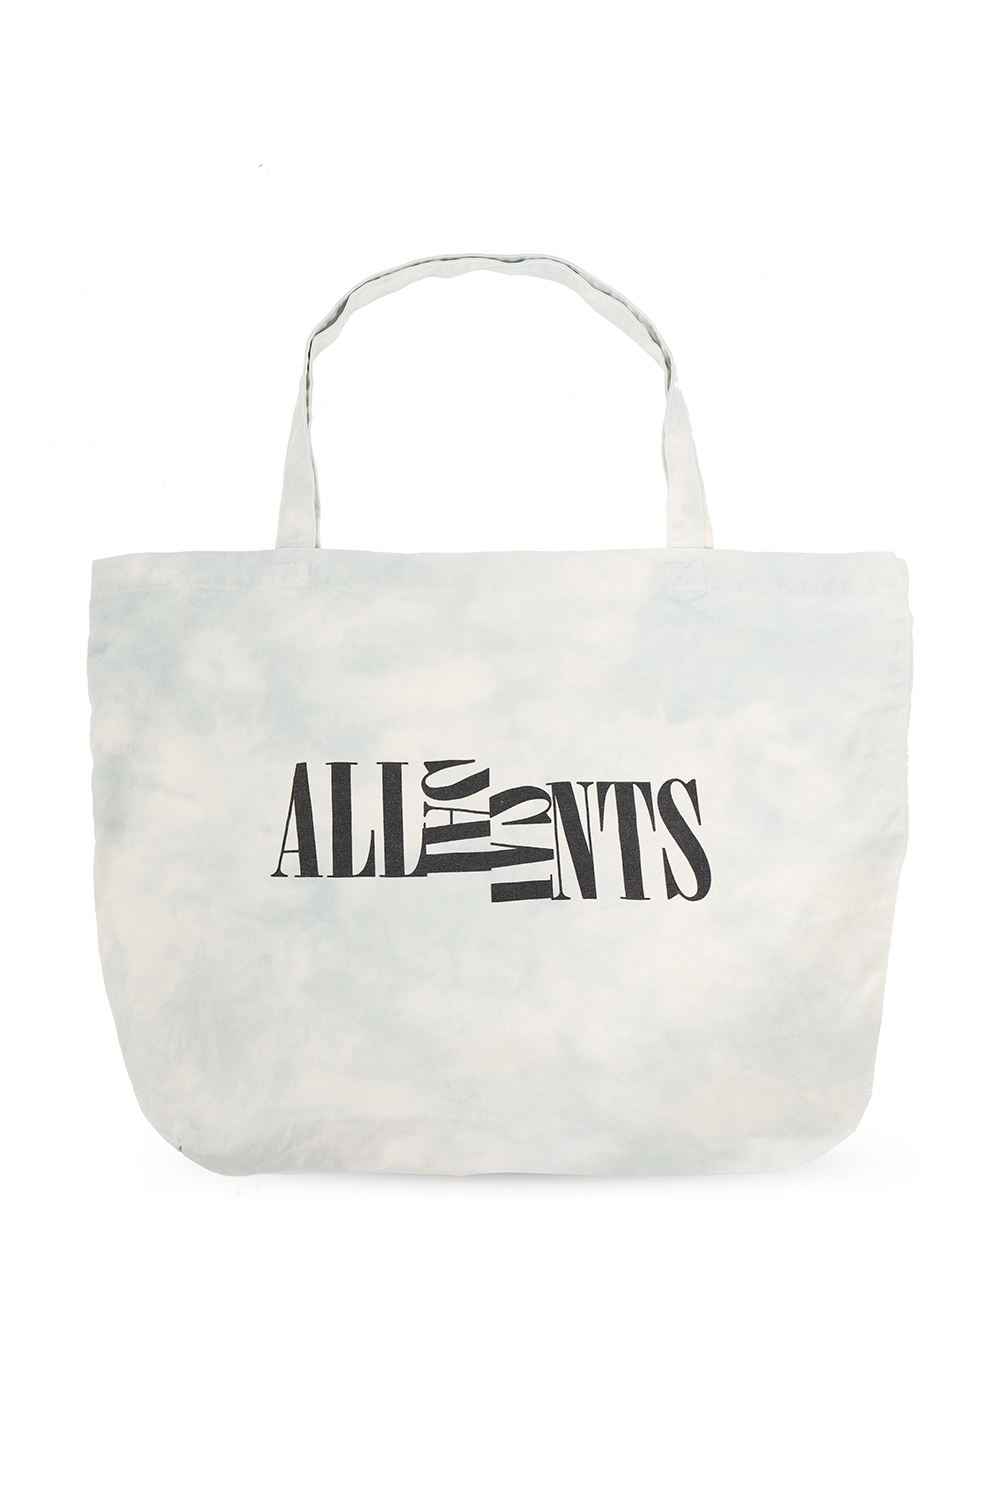 AllSaints ‘Spt Oppose’ shopper bag